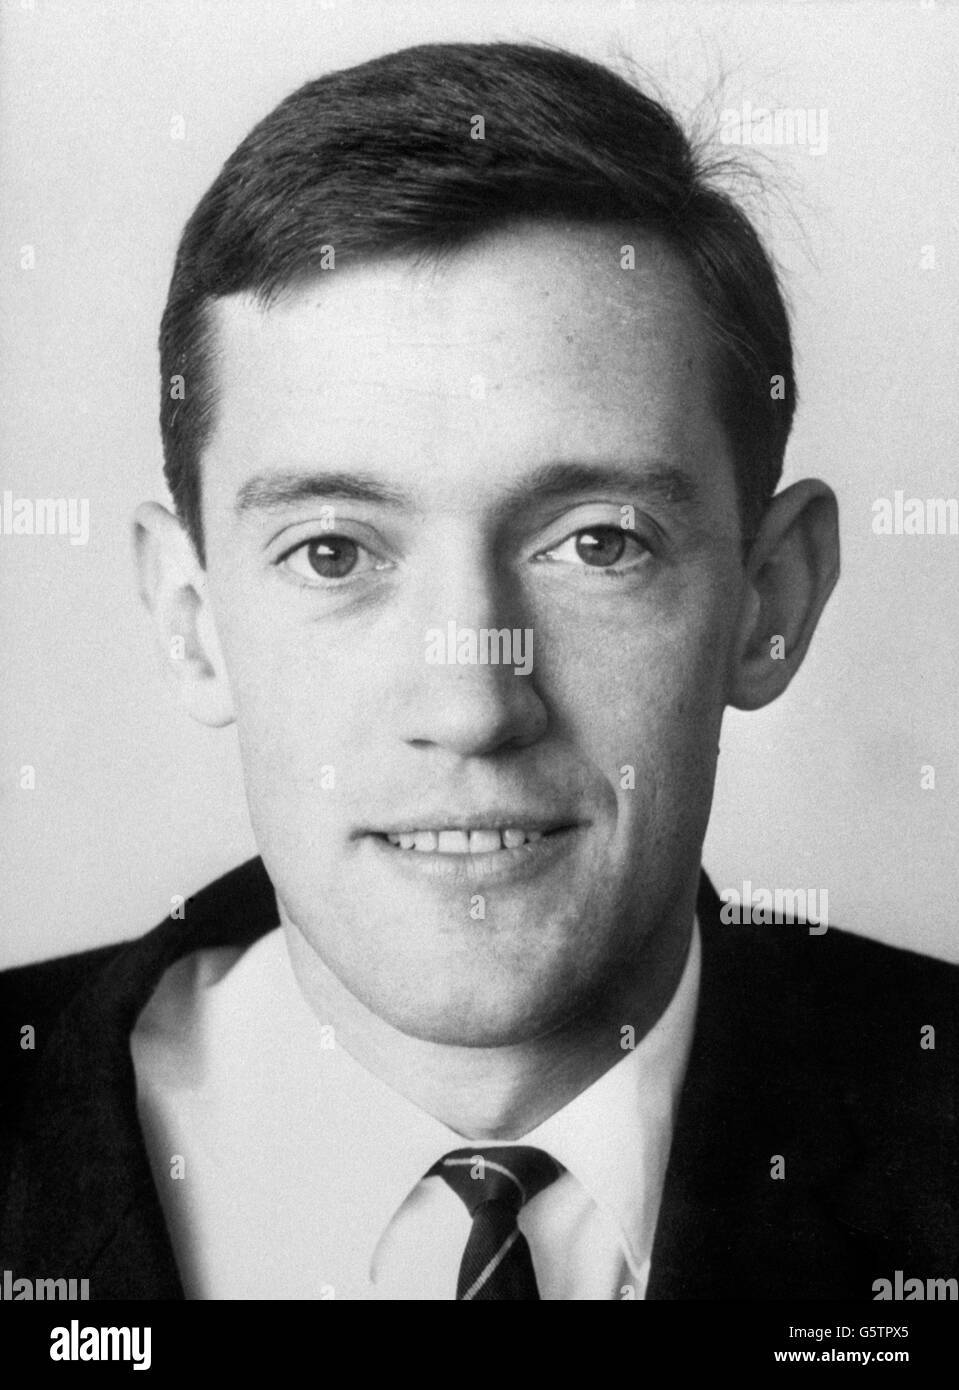 Der First Officer Kenneth C. Ware, 28, aus Girvan, Schottland, war eine der neun Besatzungsmitglieder unter den 118 Toten, die bei einem Absturz eines BEA Trident-Jets in Staines in Brüssel ums Leben kamen. Stockfoto